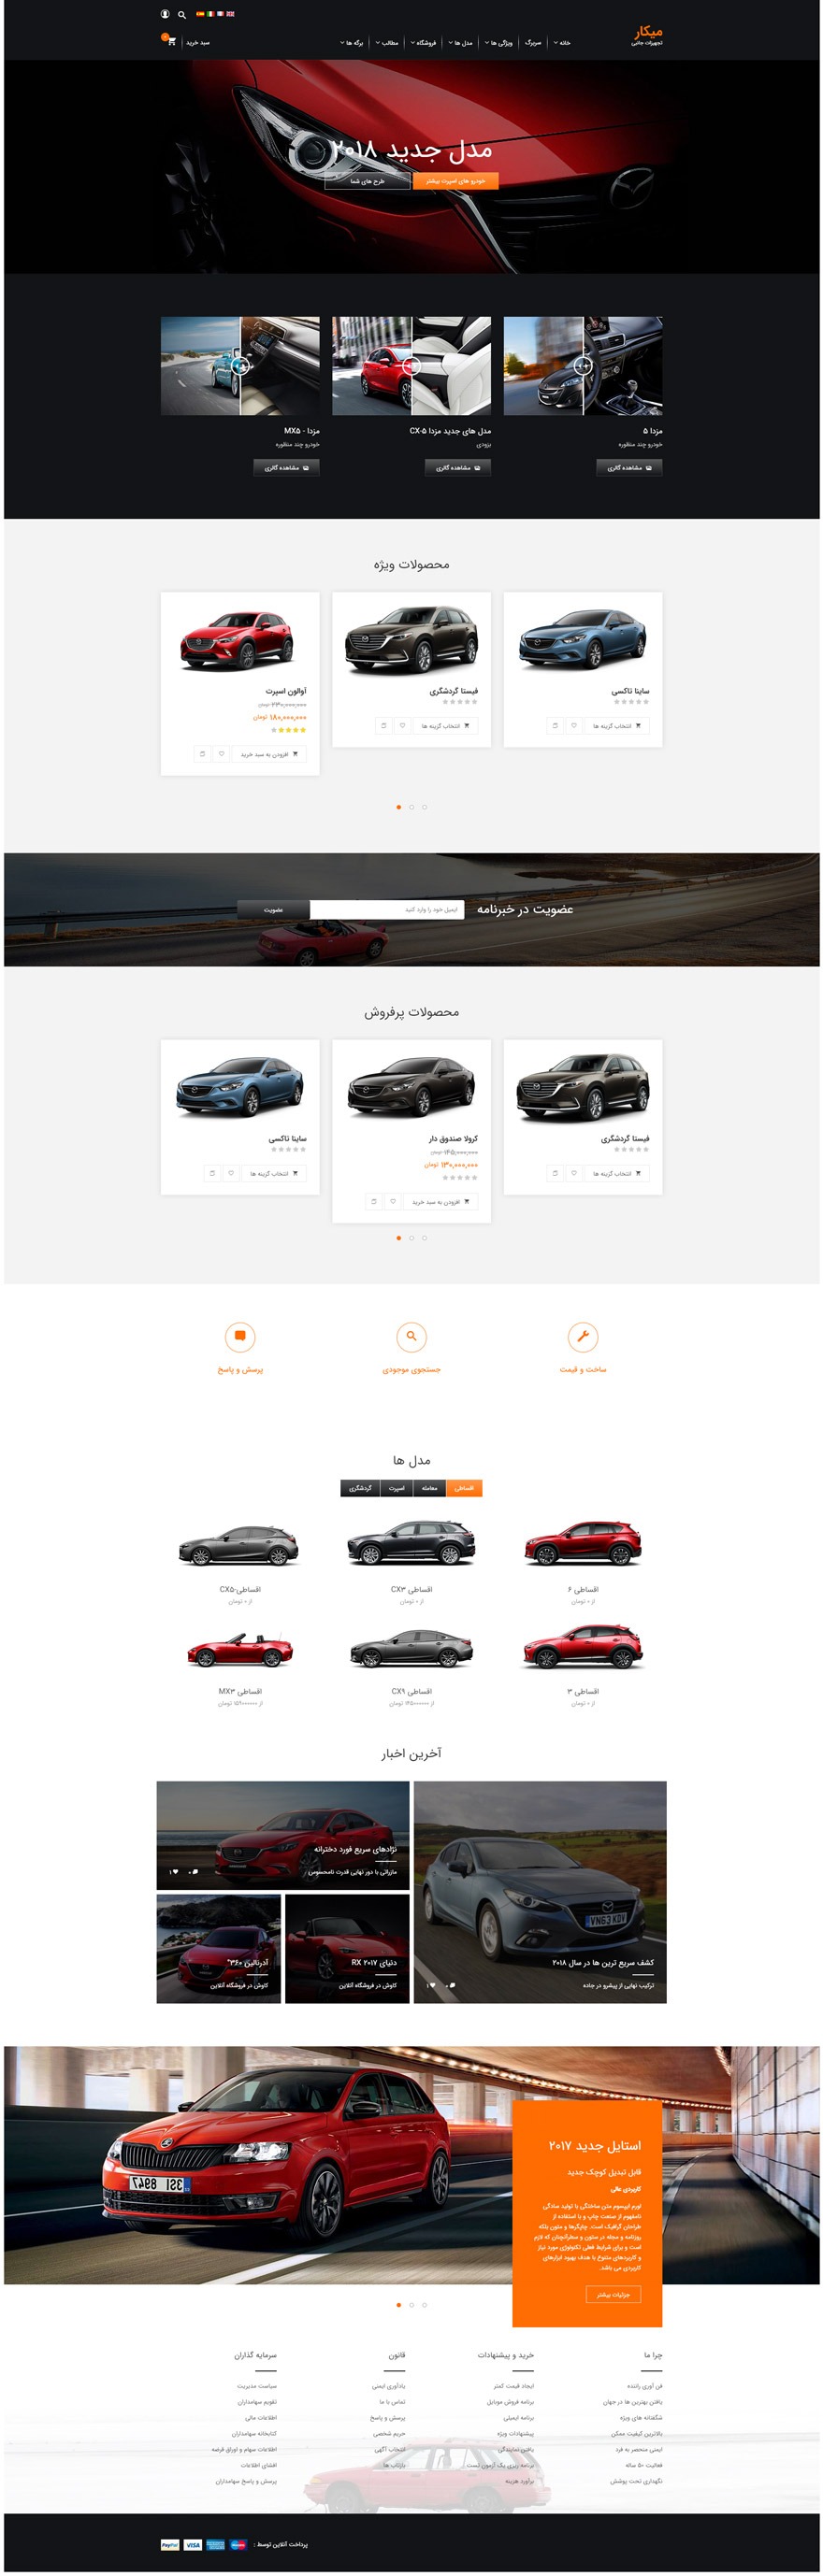 طراحی سایت نمایشگاه خودرو